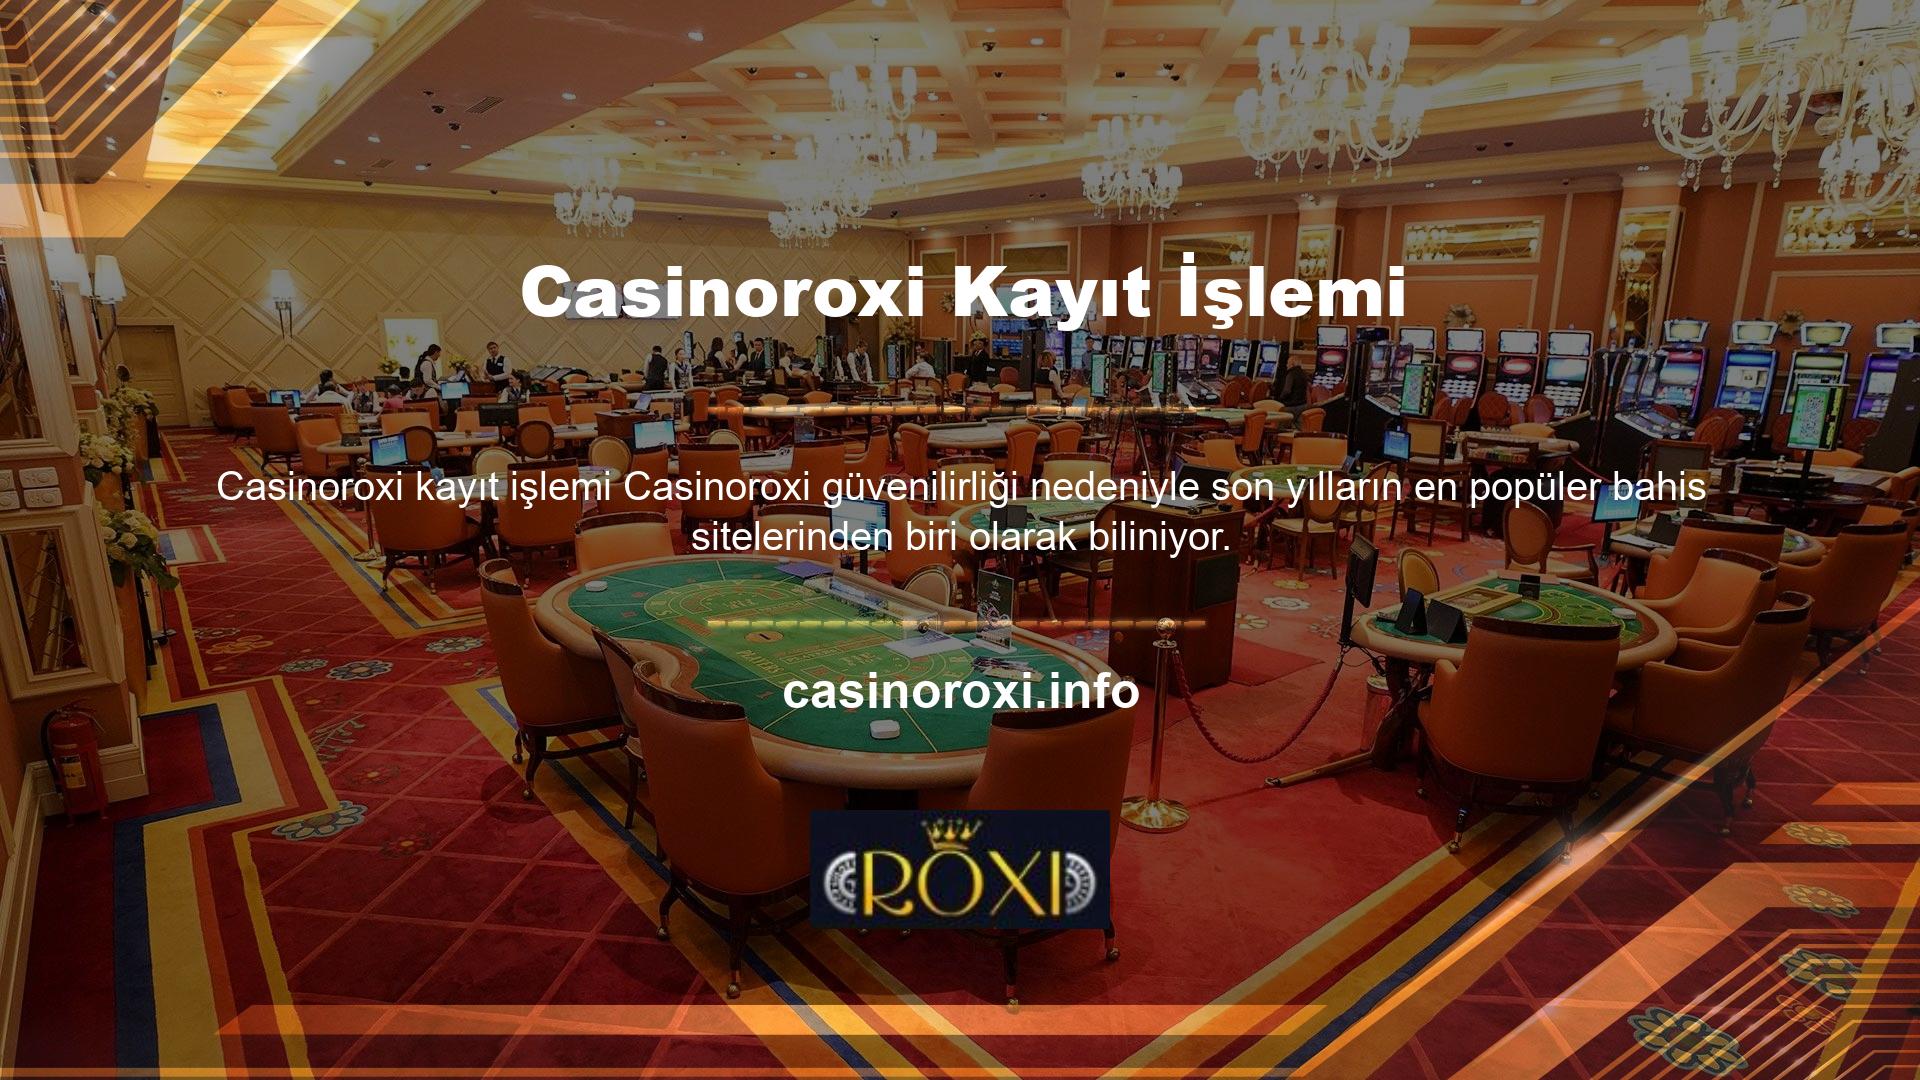 Genel bir değerlendirme, hizmetlerine başlayan bahis sitesi Casinoroxi kuruluşunun ilk gününden bahsetmemizi sağlar